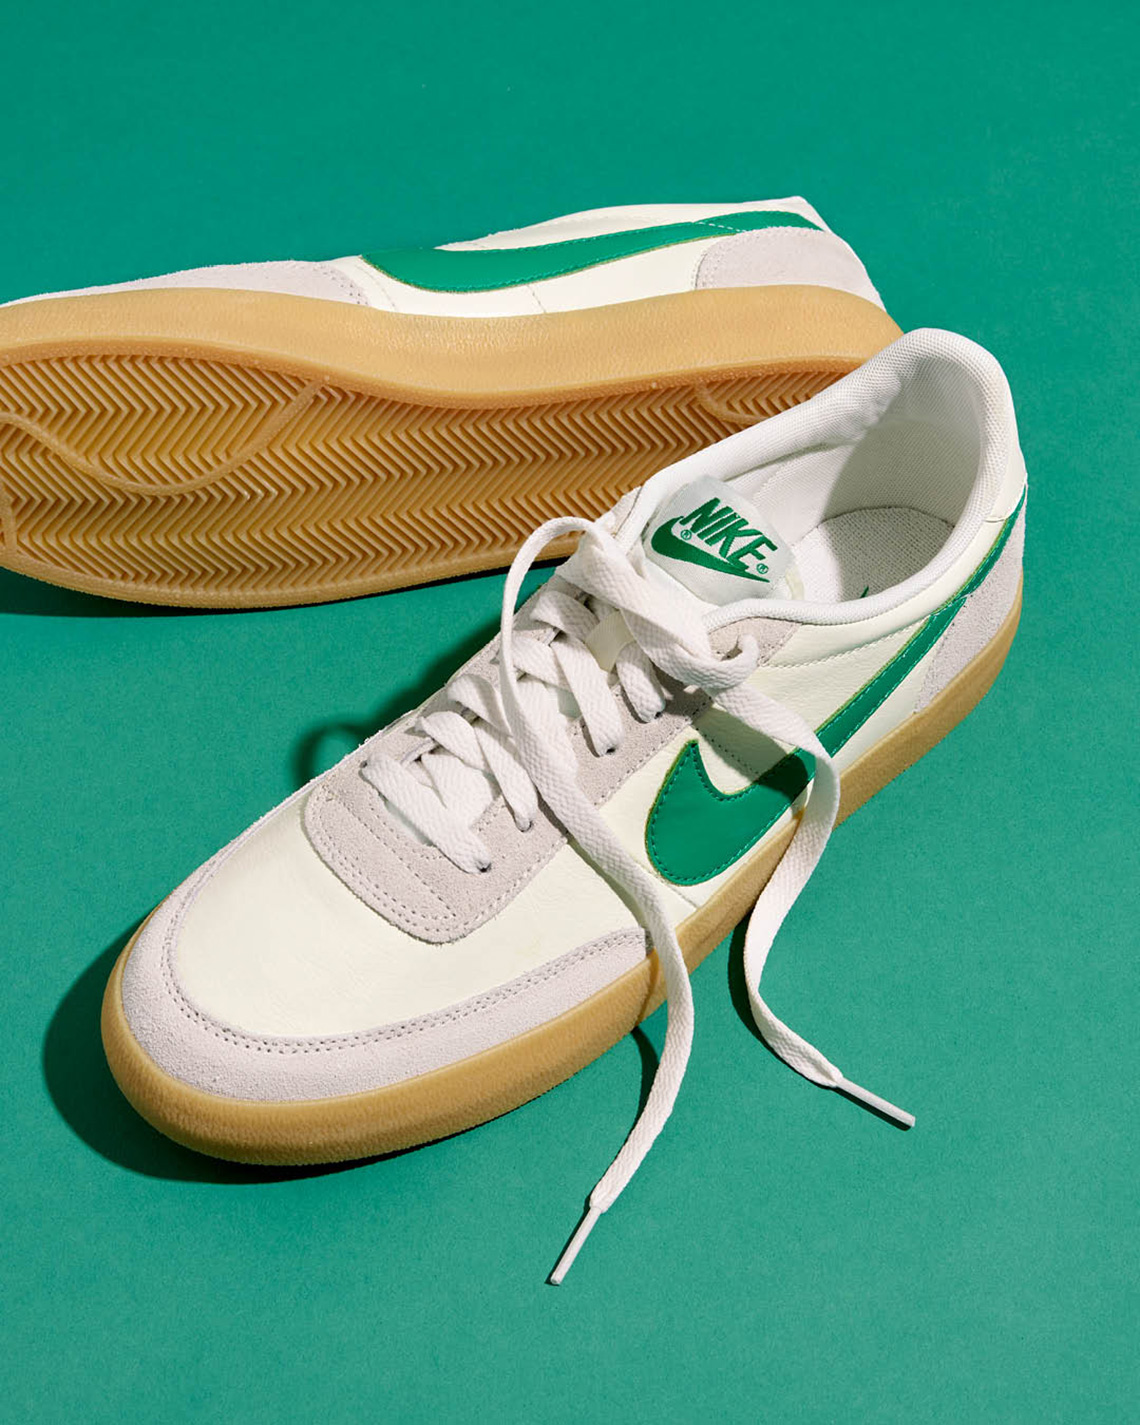 J.Crew Nike Killshot White Green - Buy 